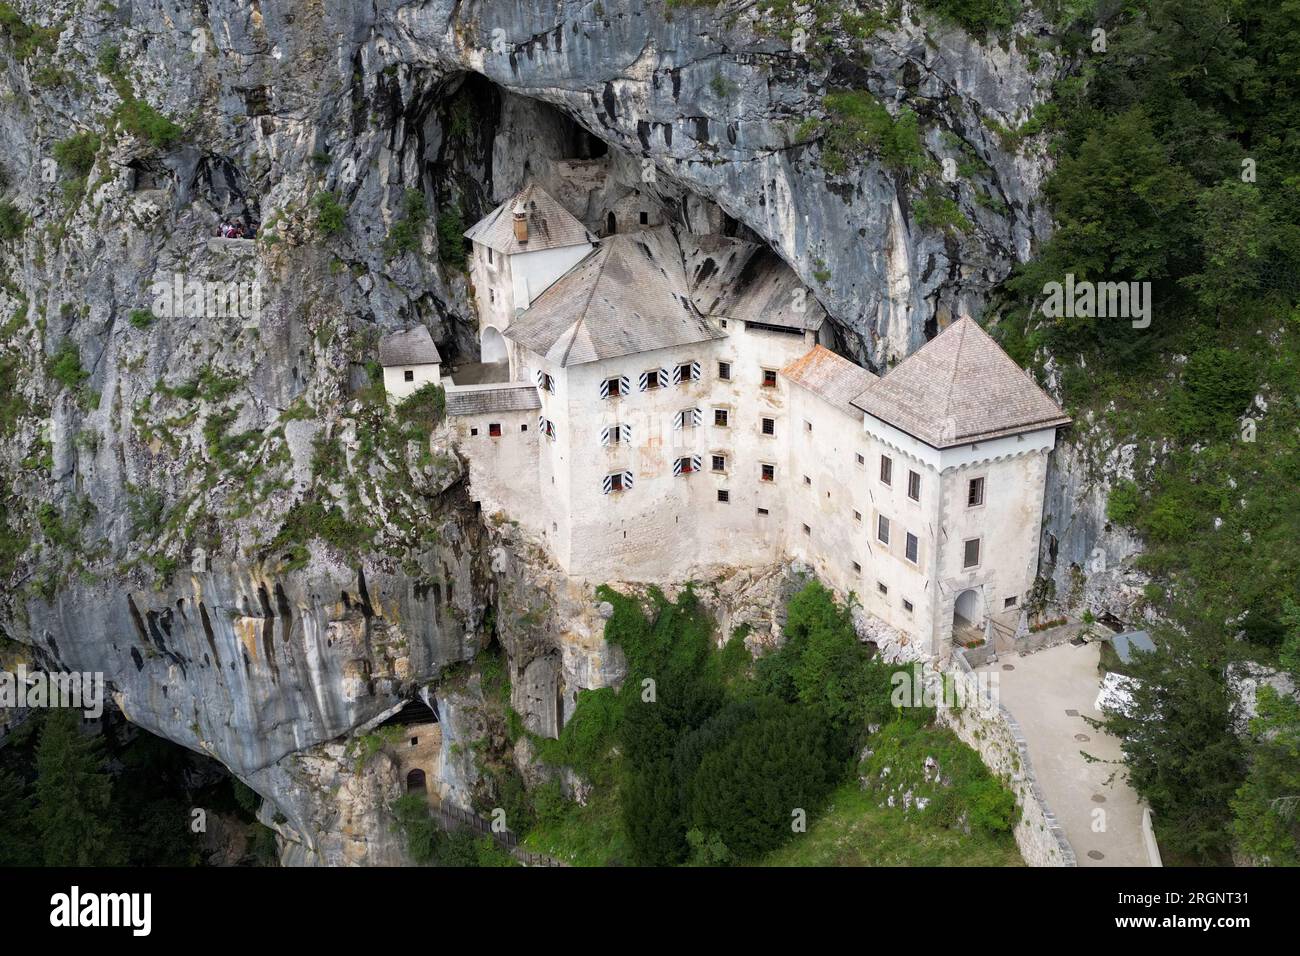 The fascinating Predjama Castle located in Slovenia Stock Photo